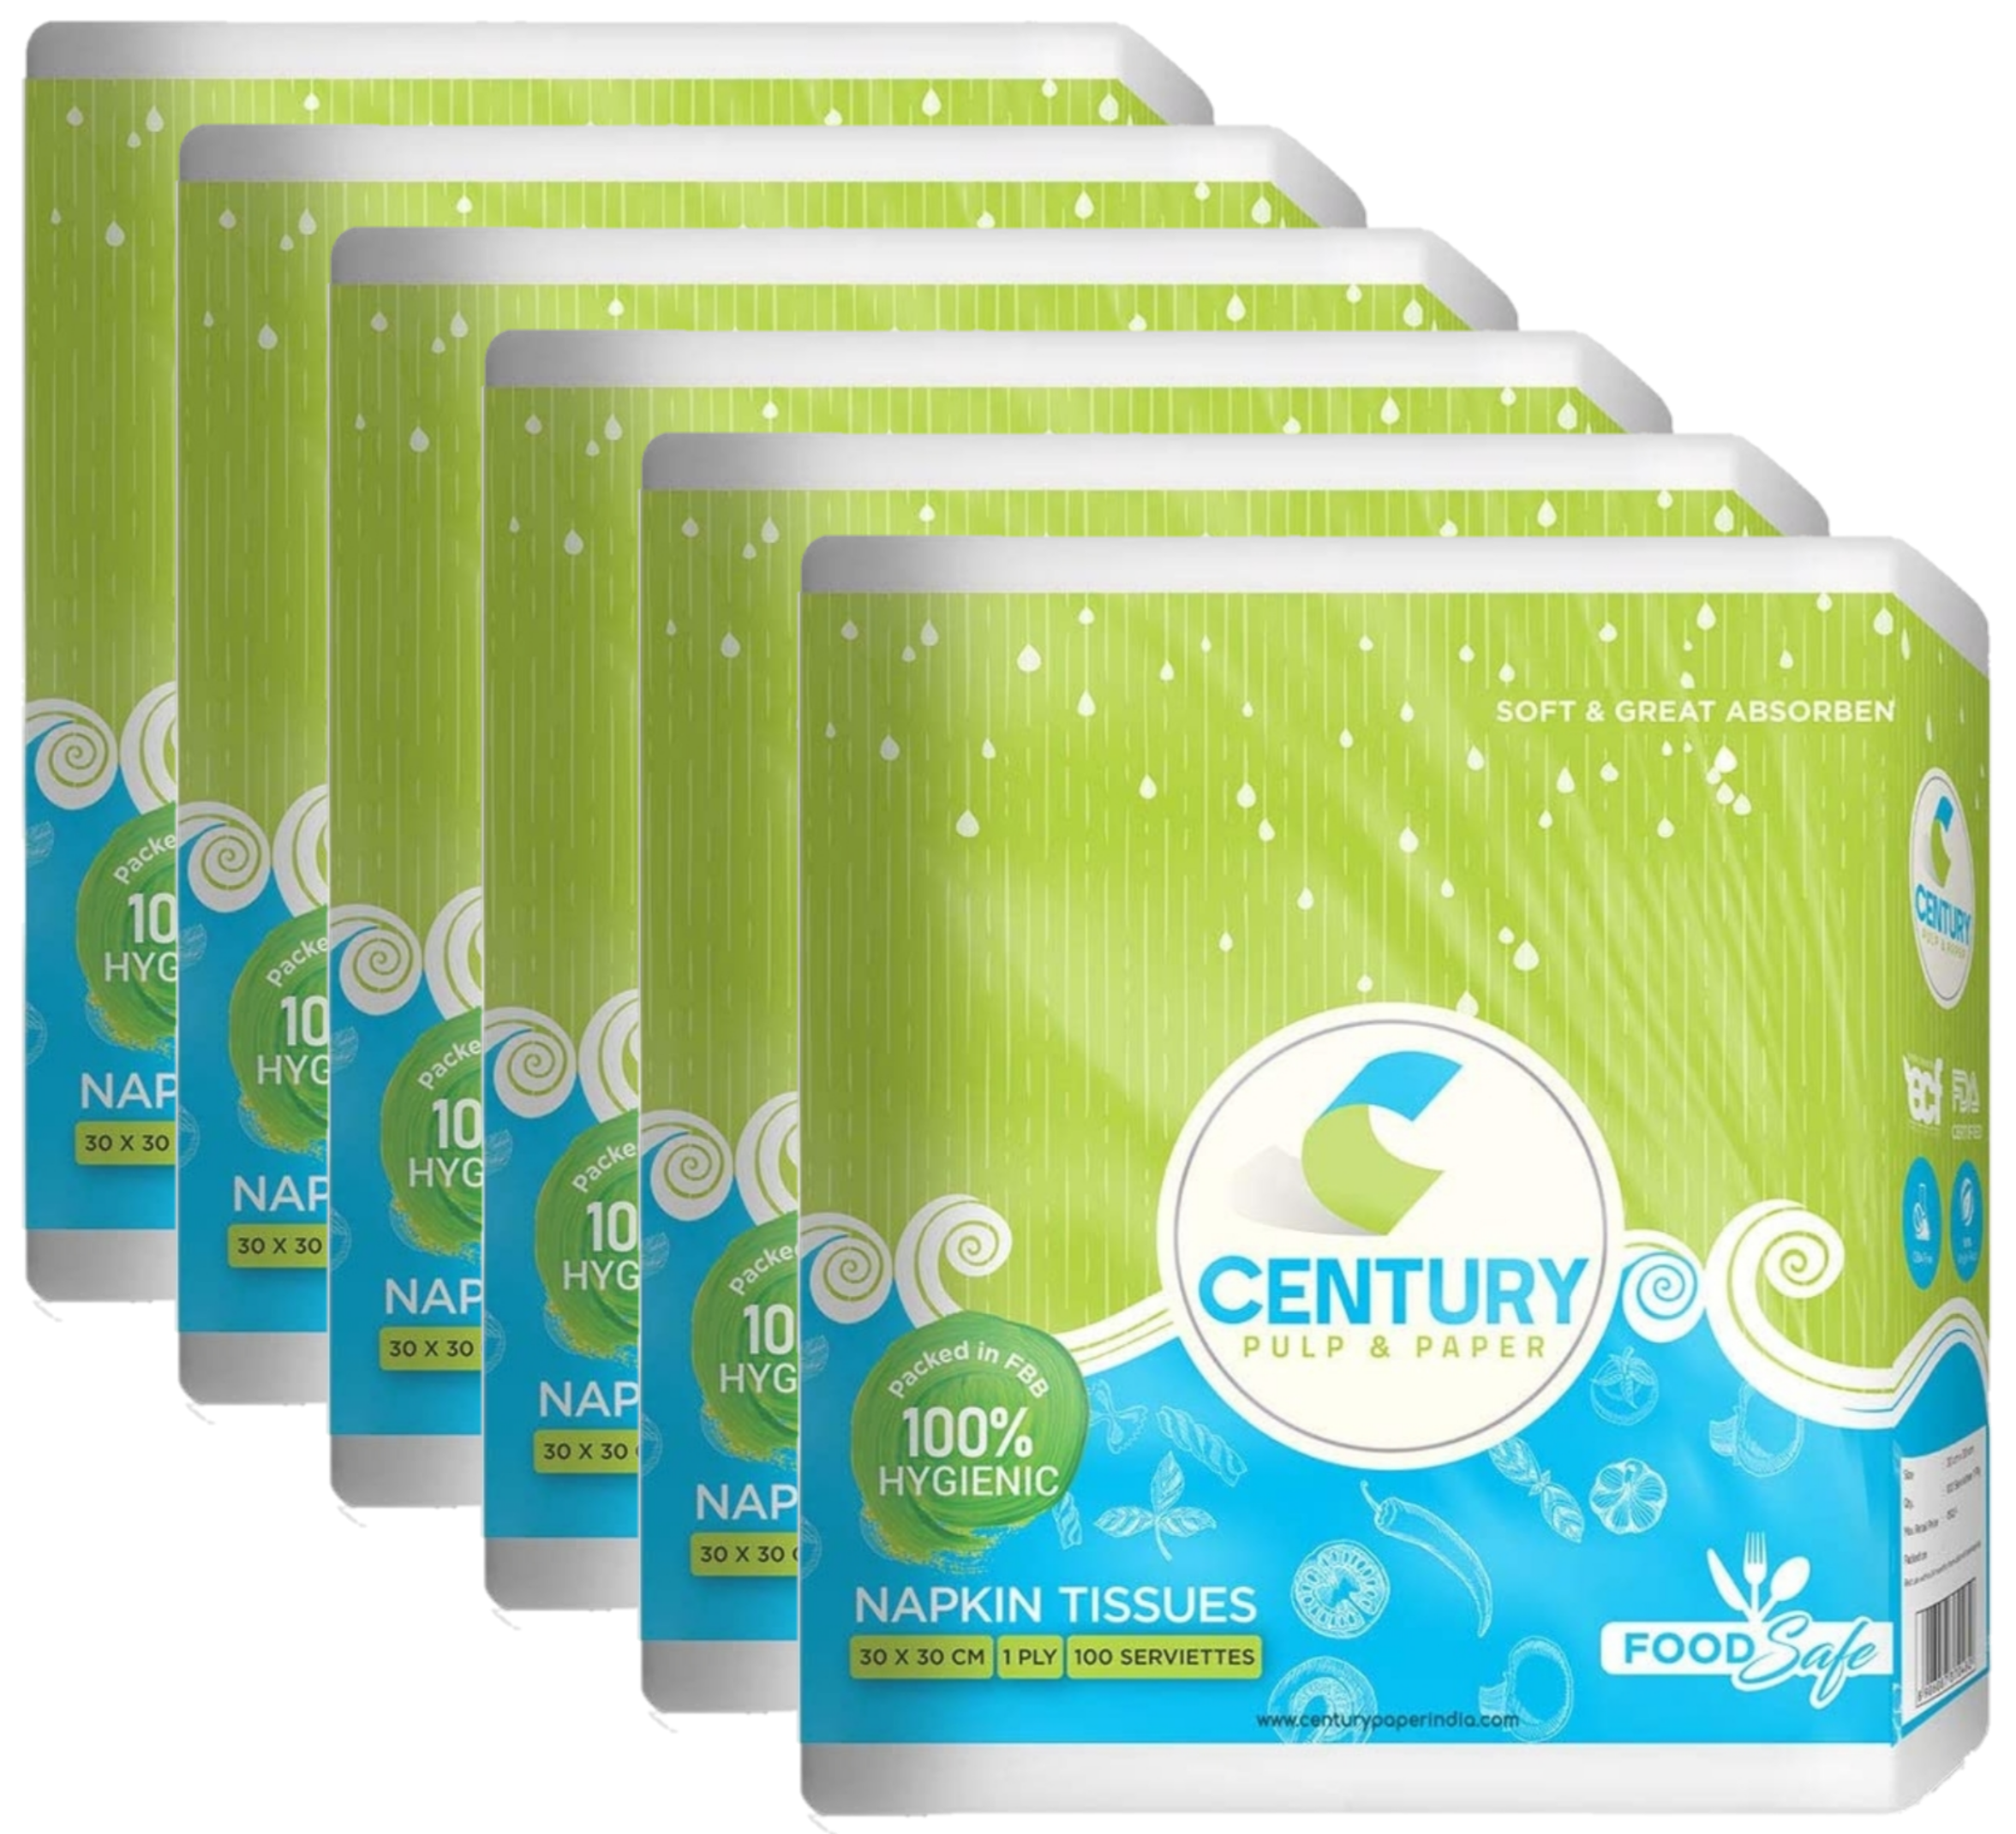 Century Napkin Tissue (30 X 30 CM , 100 PULLS / SERVIETTES) - PACK OF 6